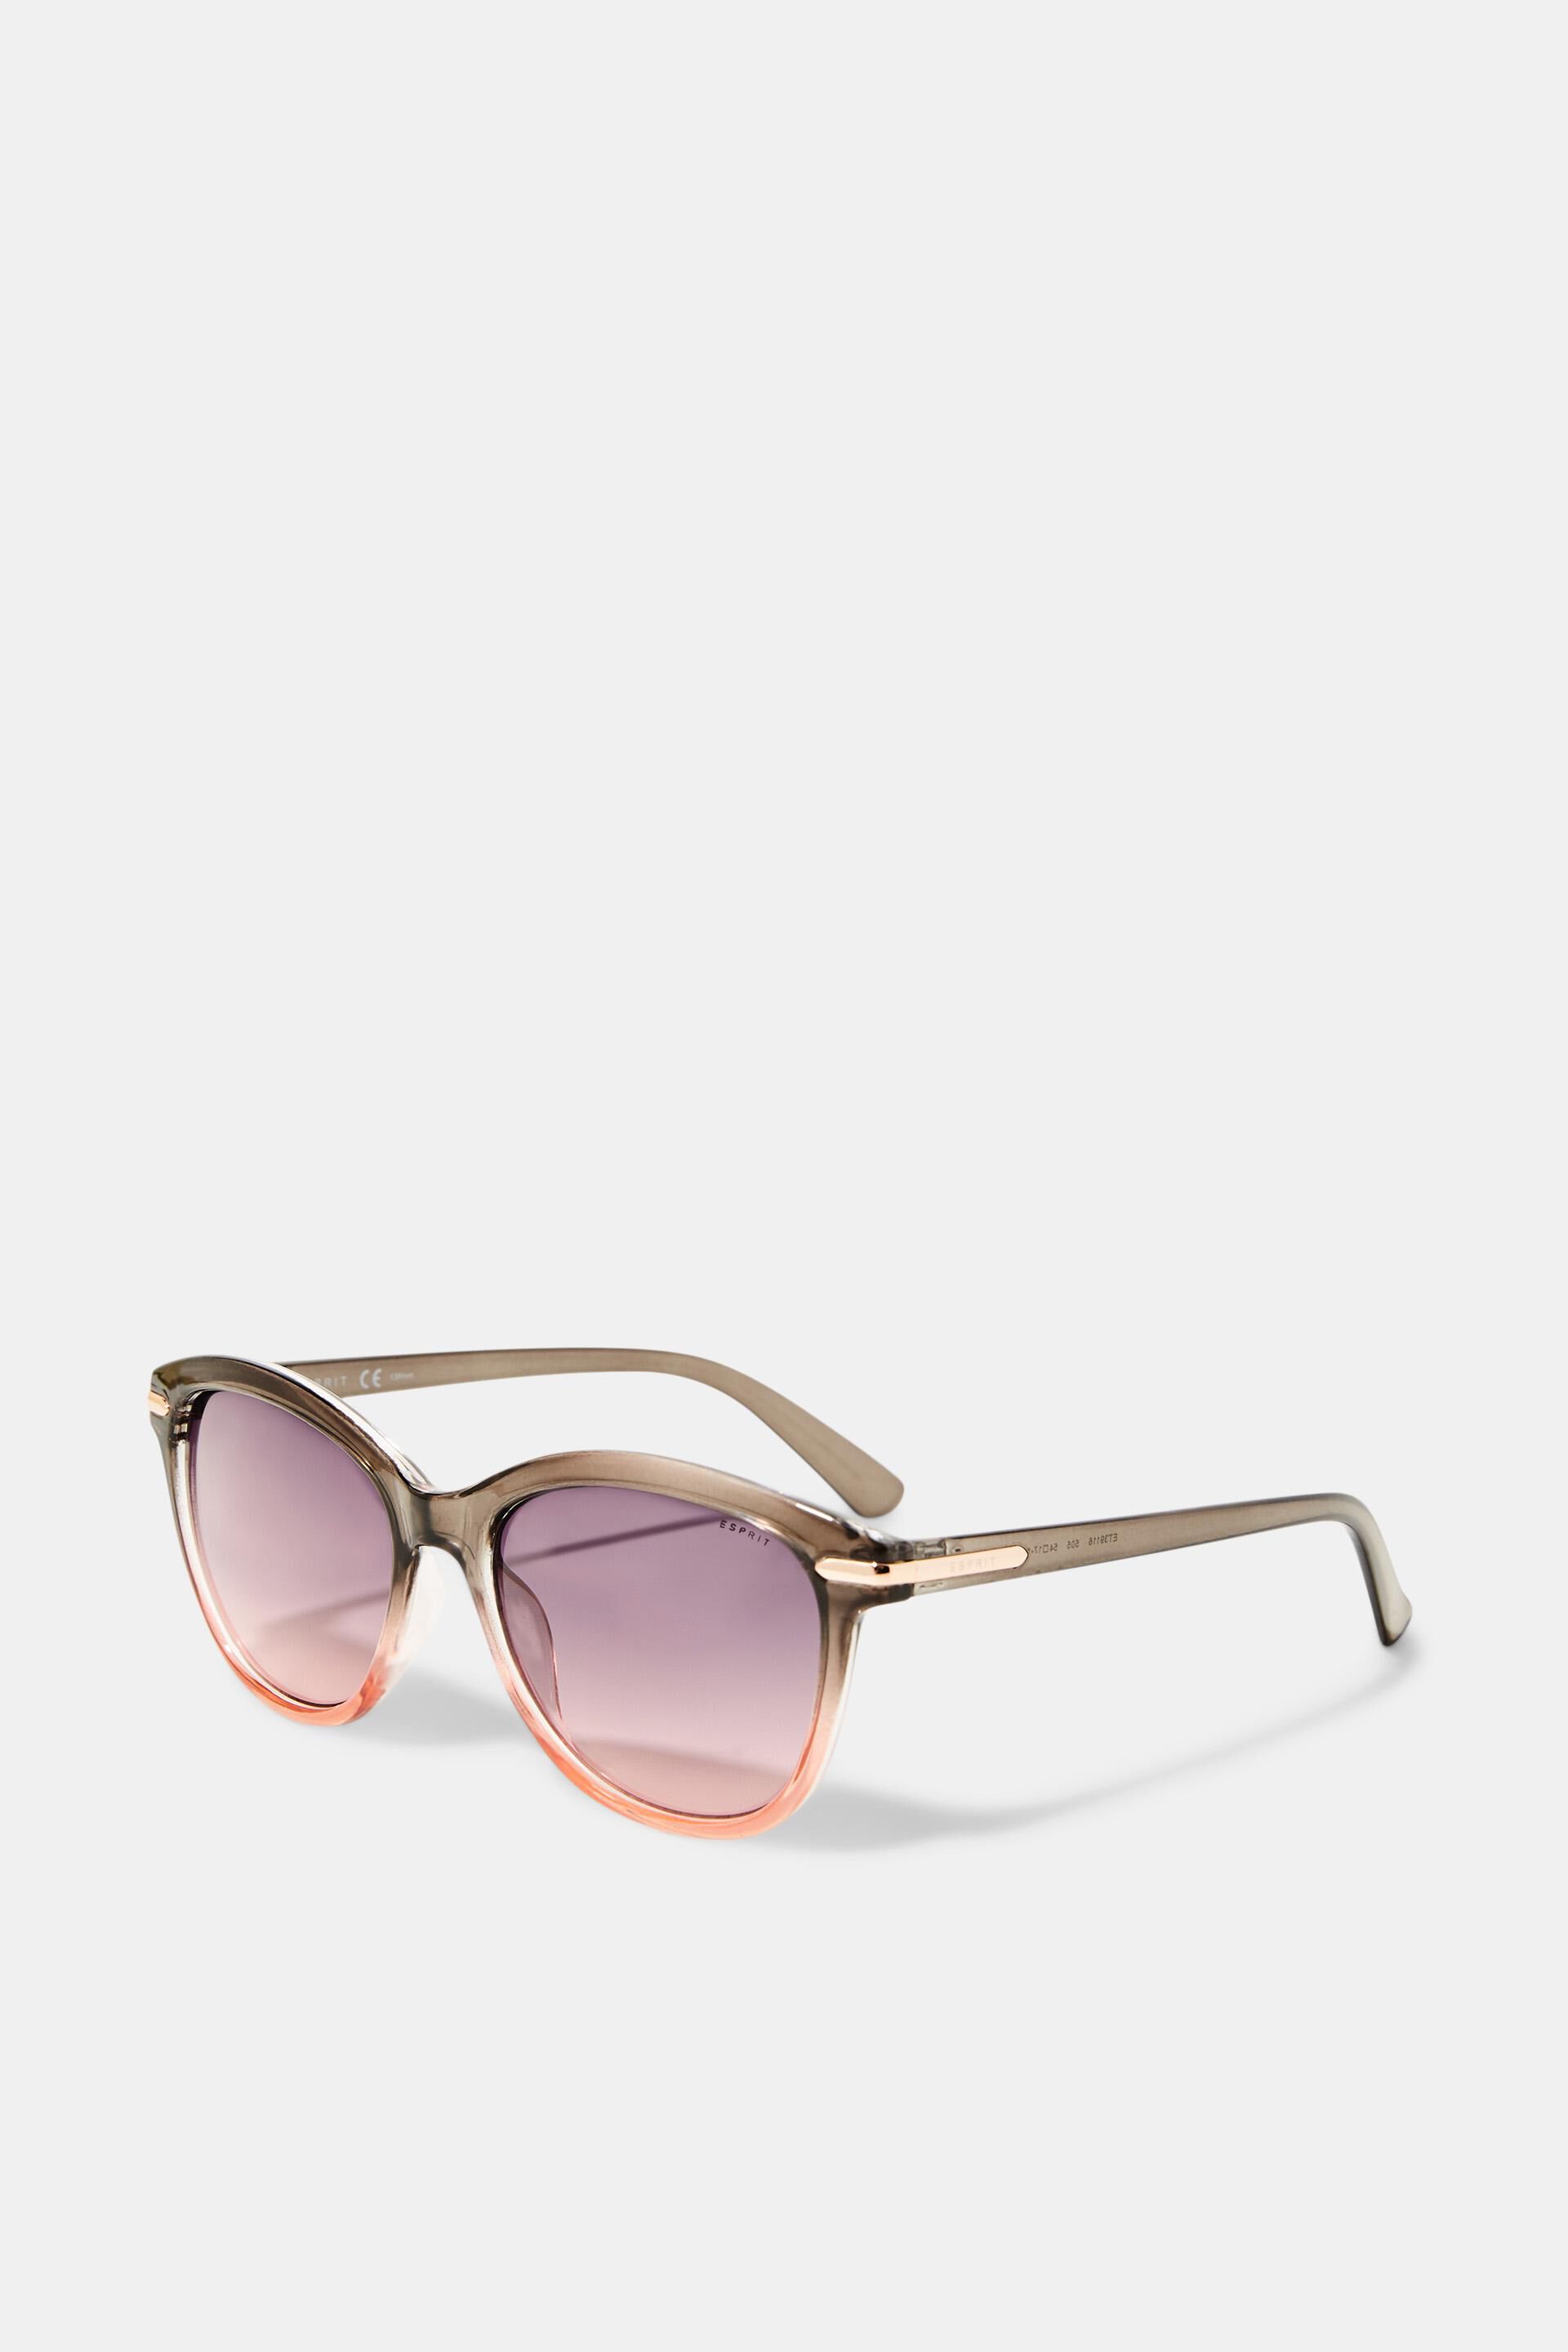 Esprit Online Store Sonnenbrille mit abgestuften Farben